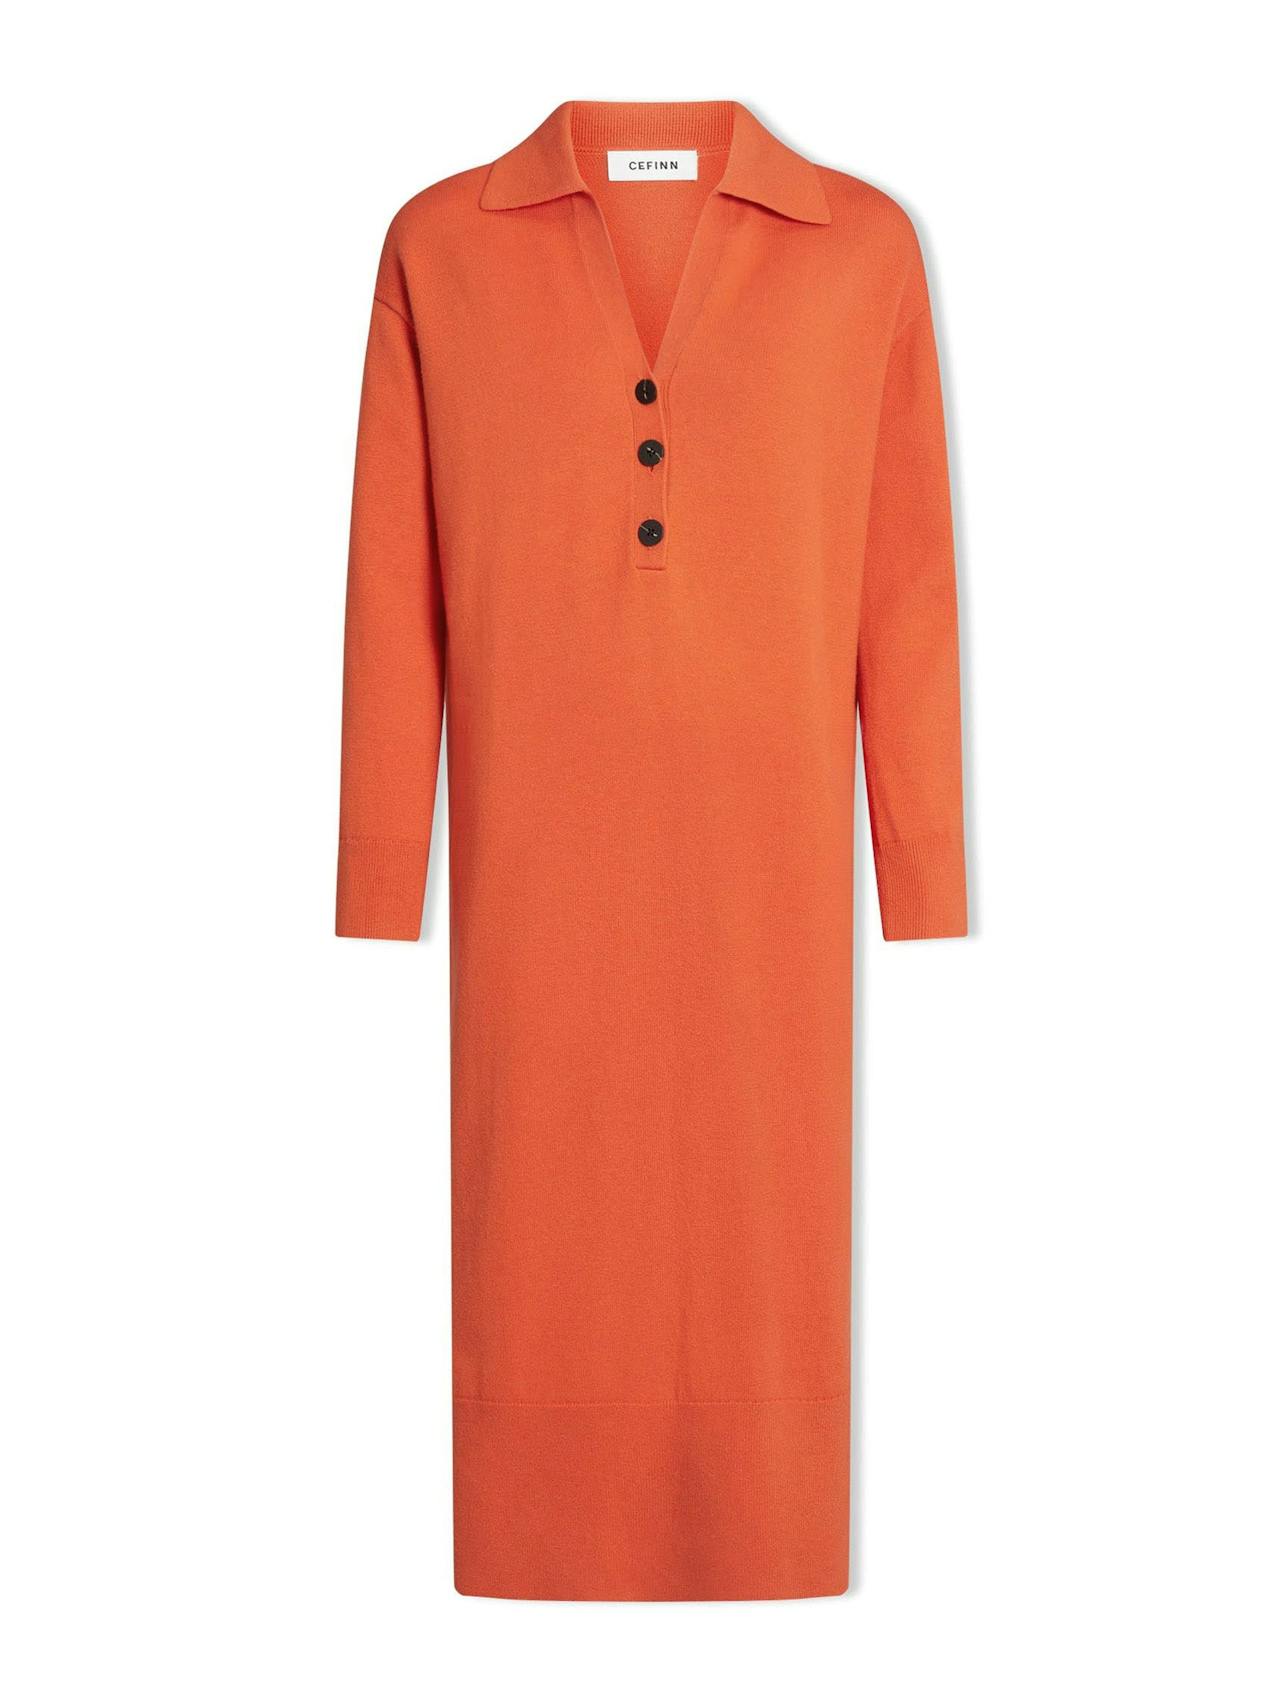 Orange Eleanor wool knit dress